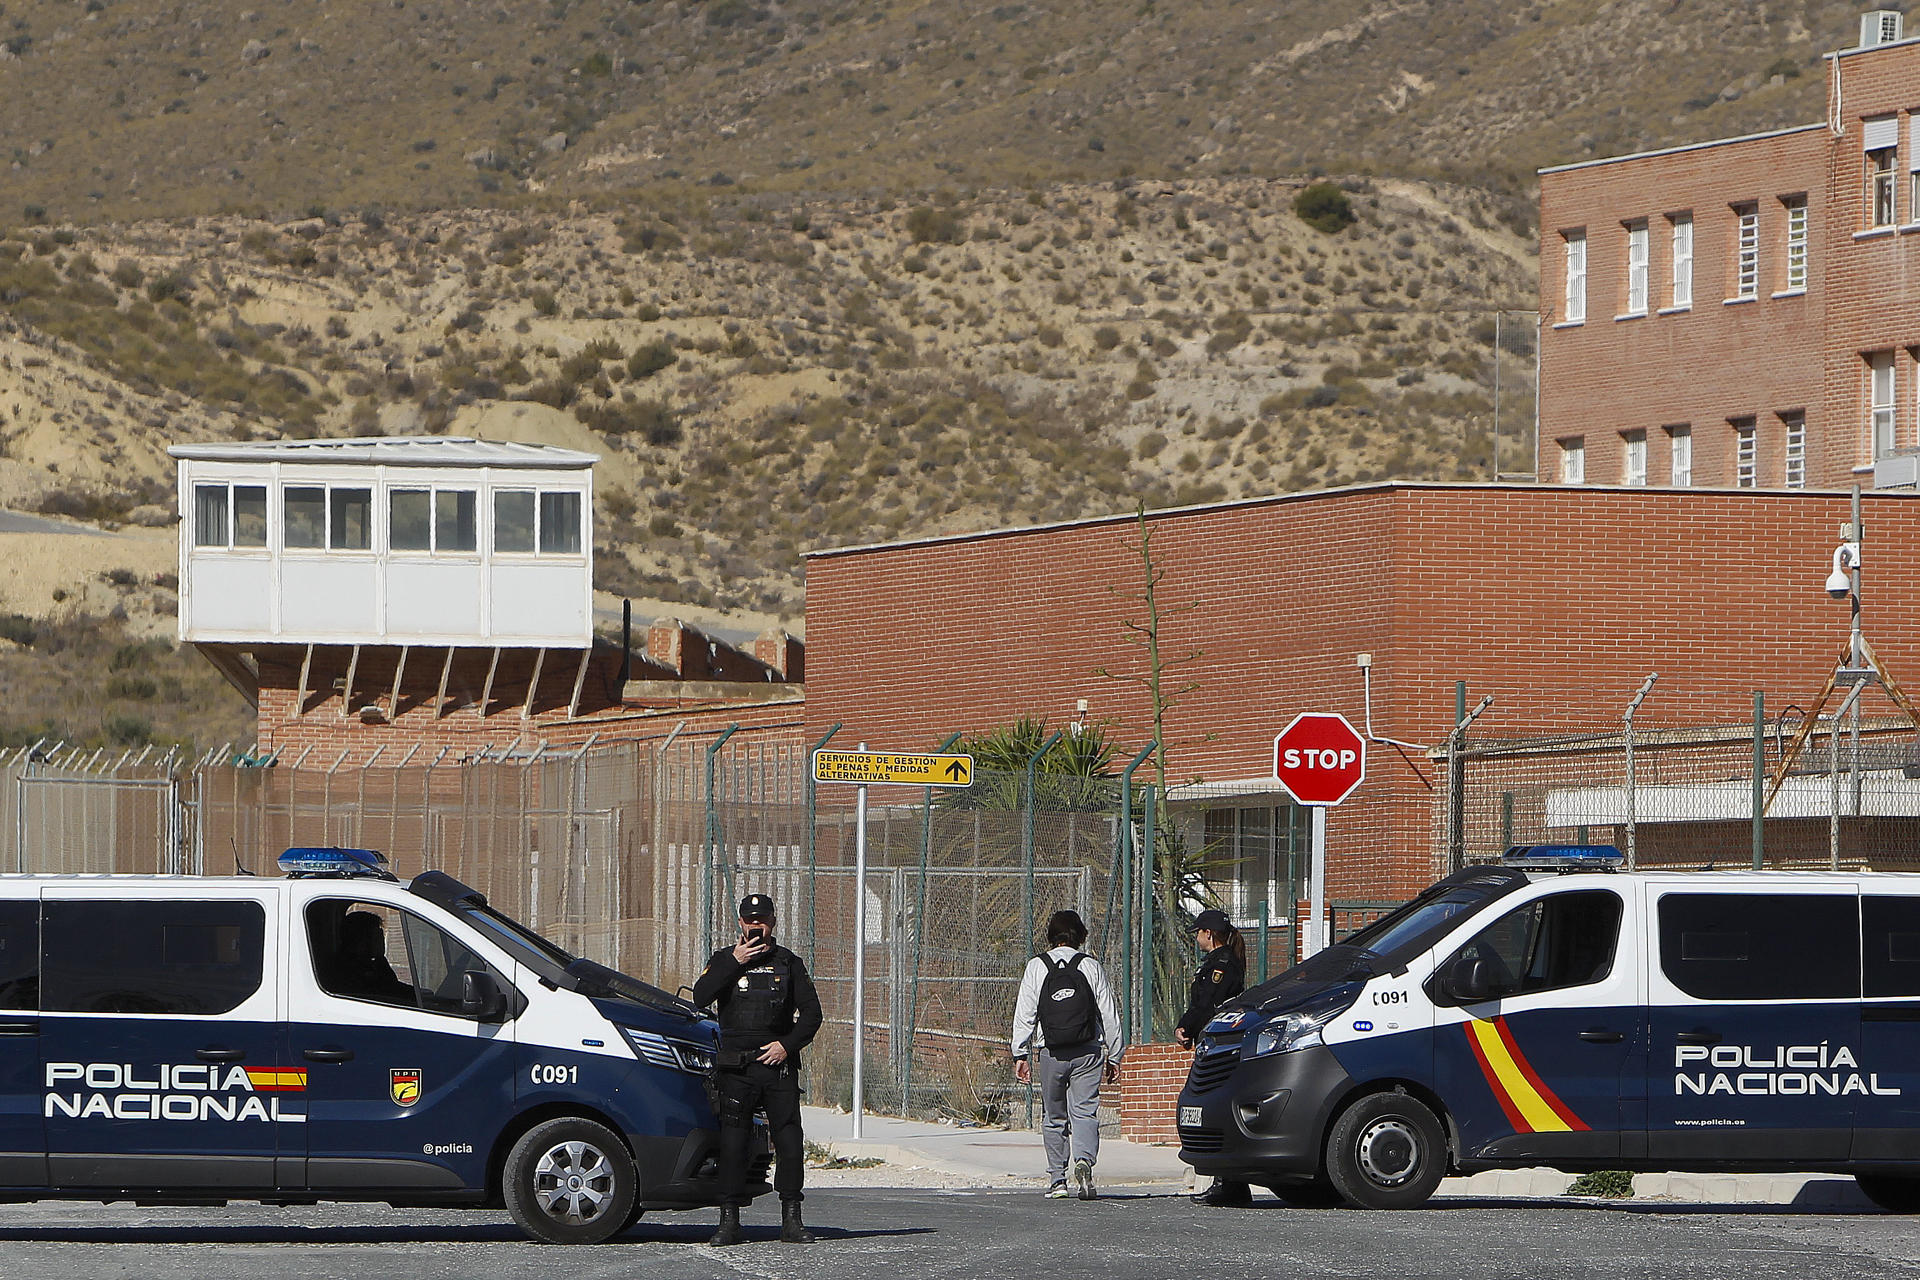 prisiones valencianas falta personal